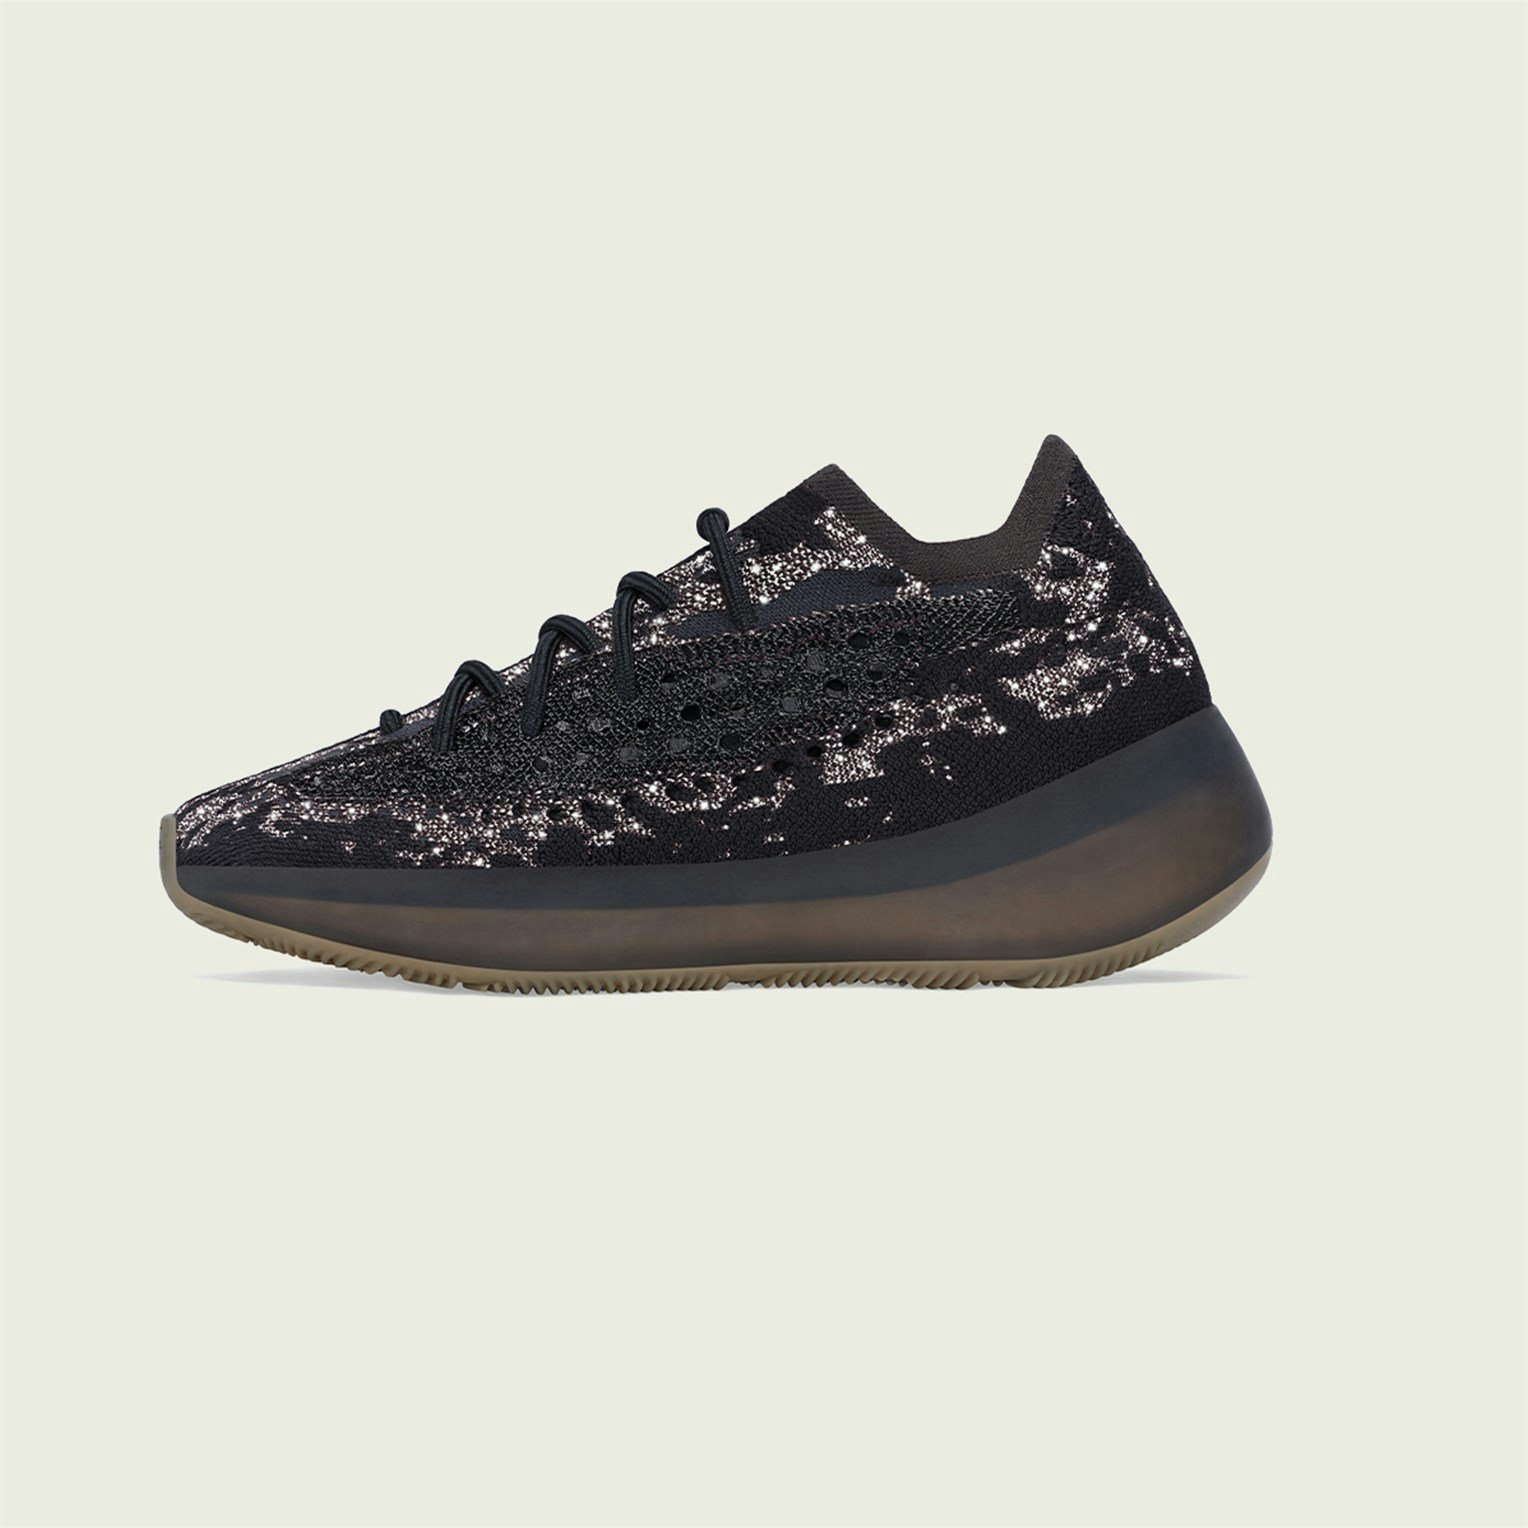 adidas Yeezy Boost 380 “Onyx Reflective”